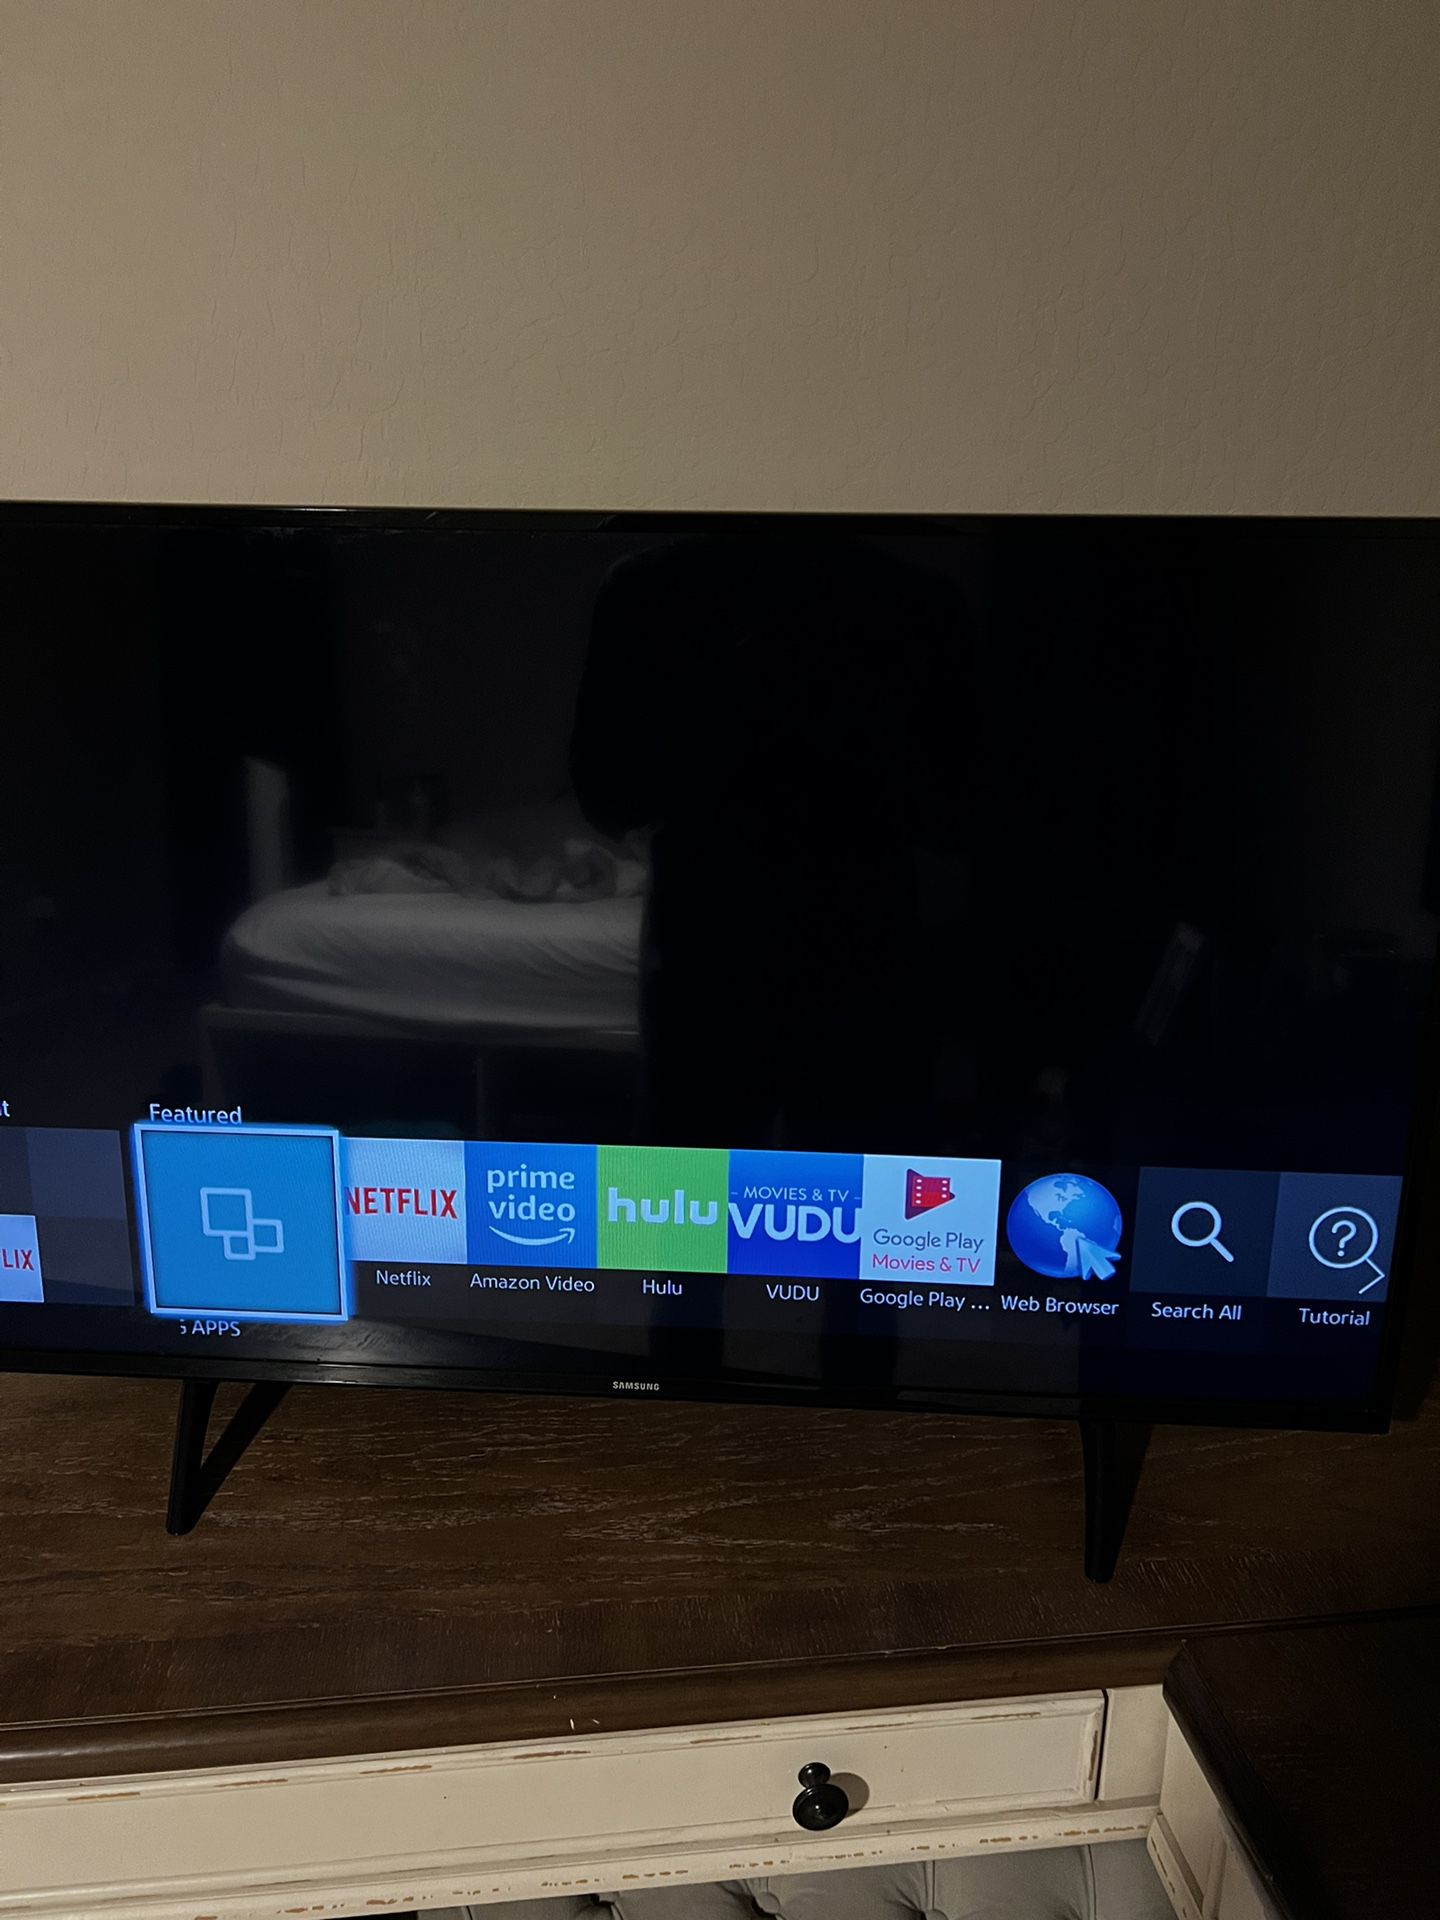 Samsung 42” LED Smart TV